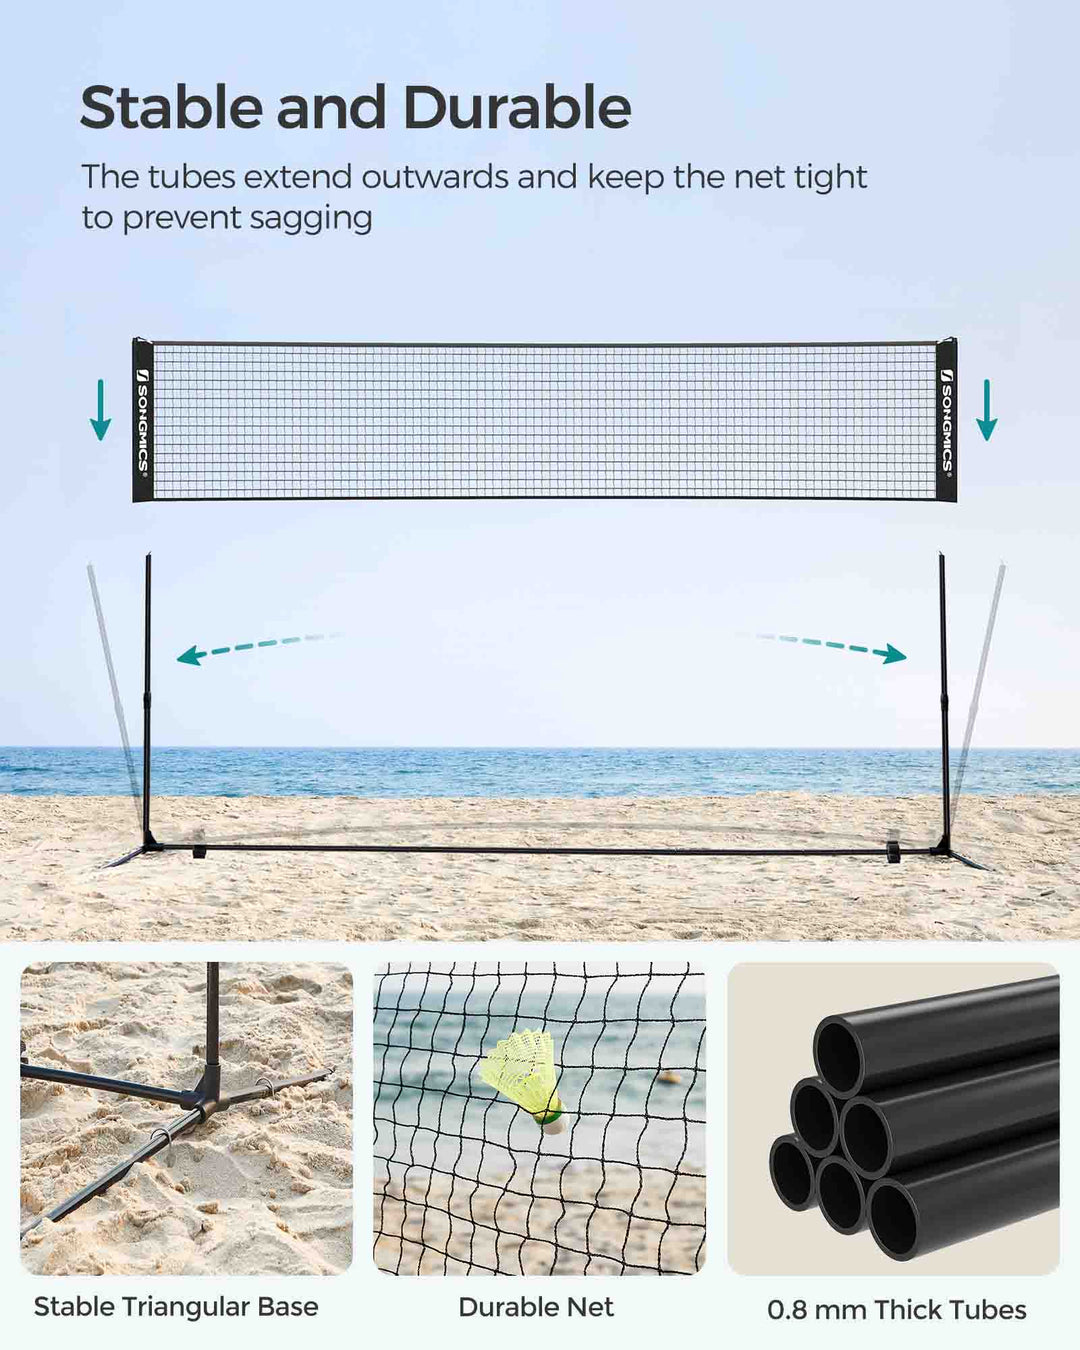 Iron Frame Badminton Net